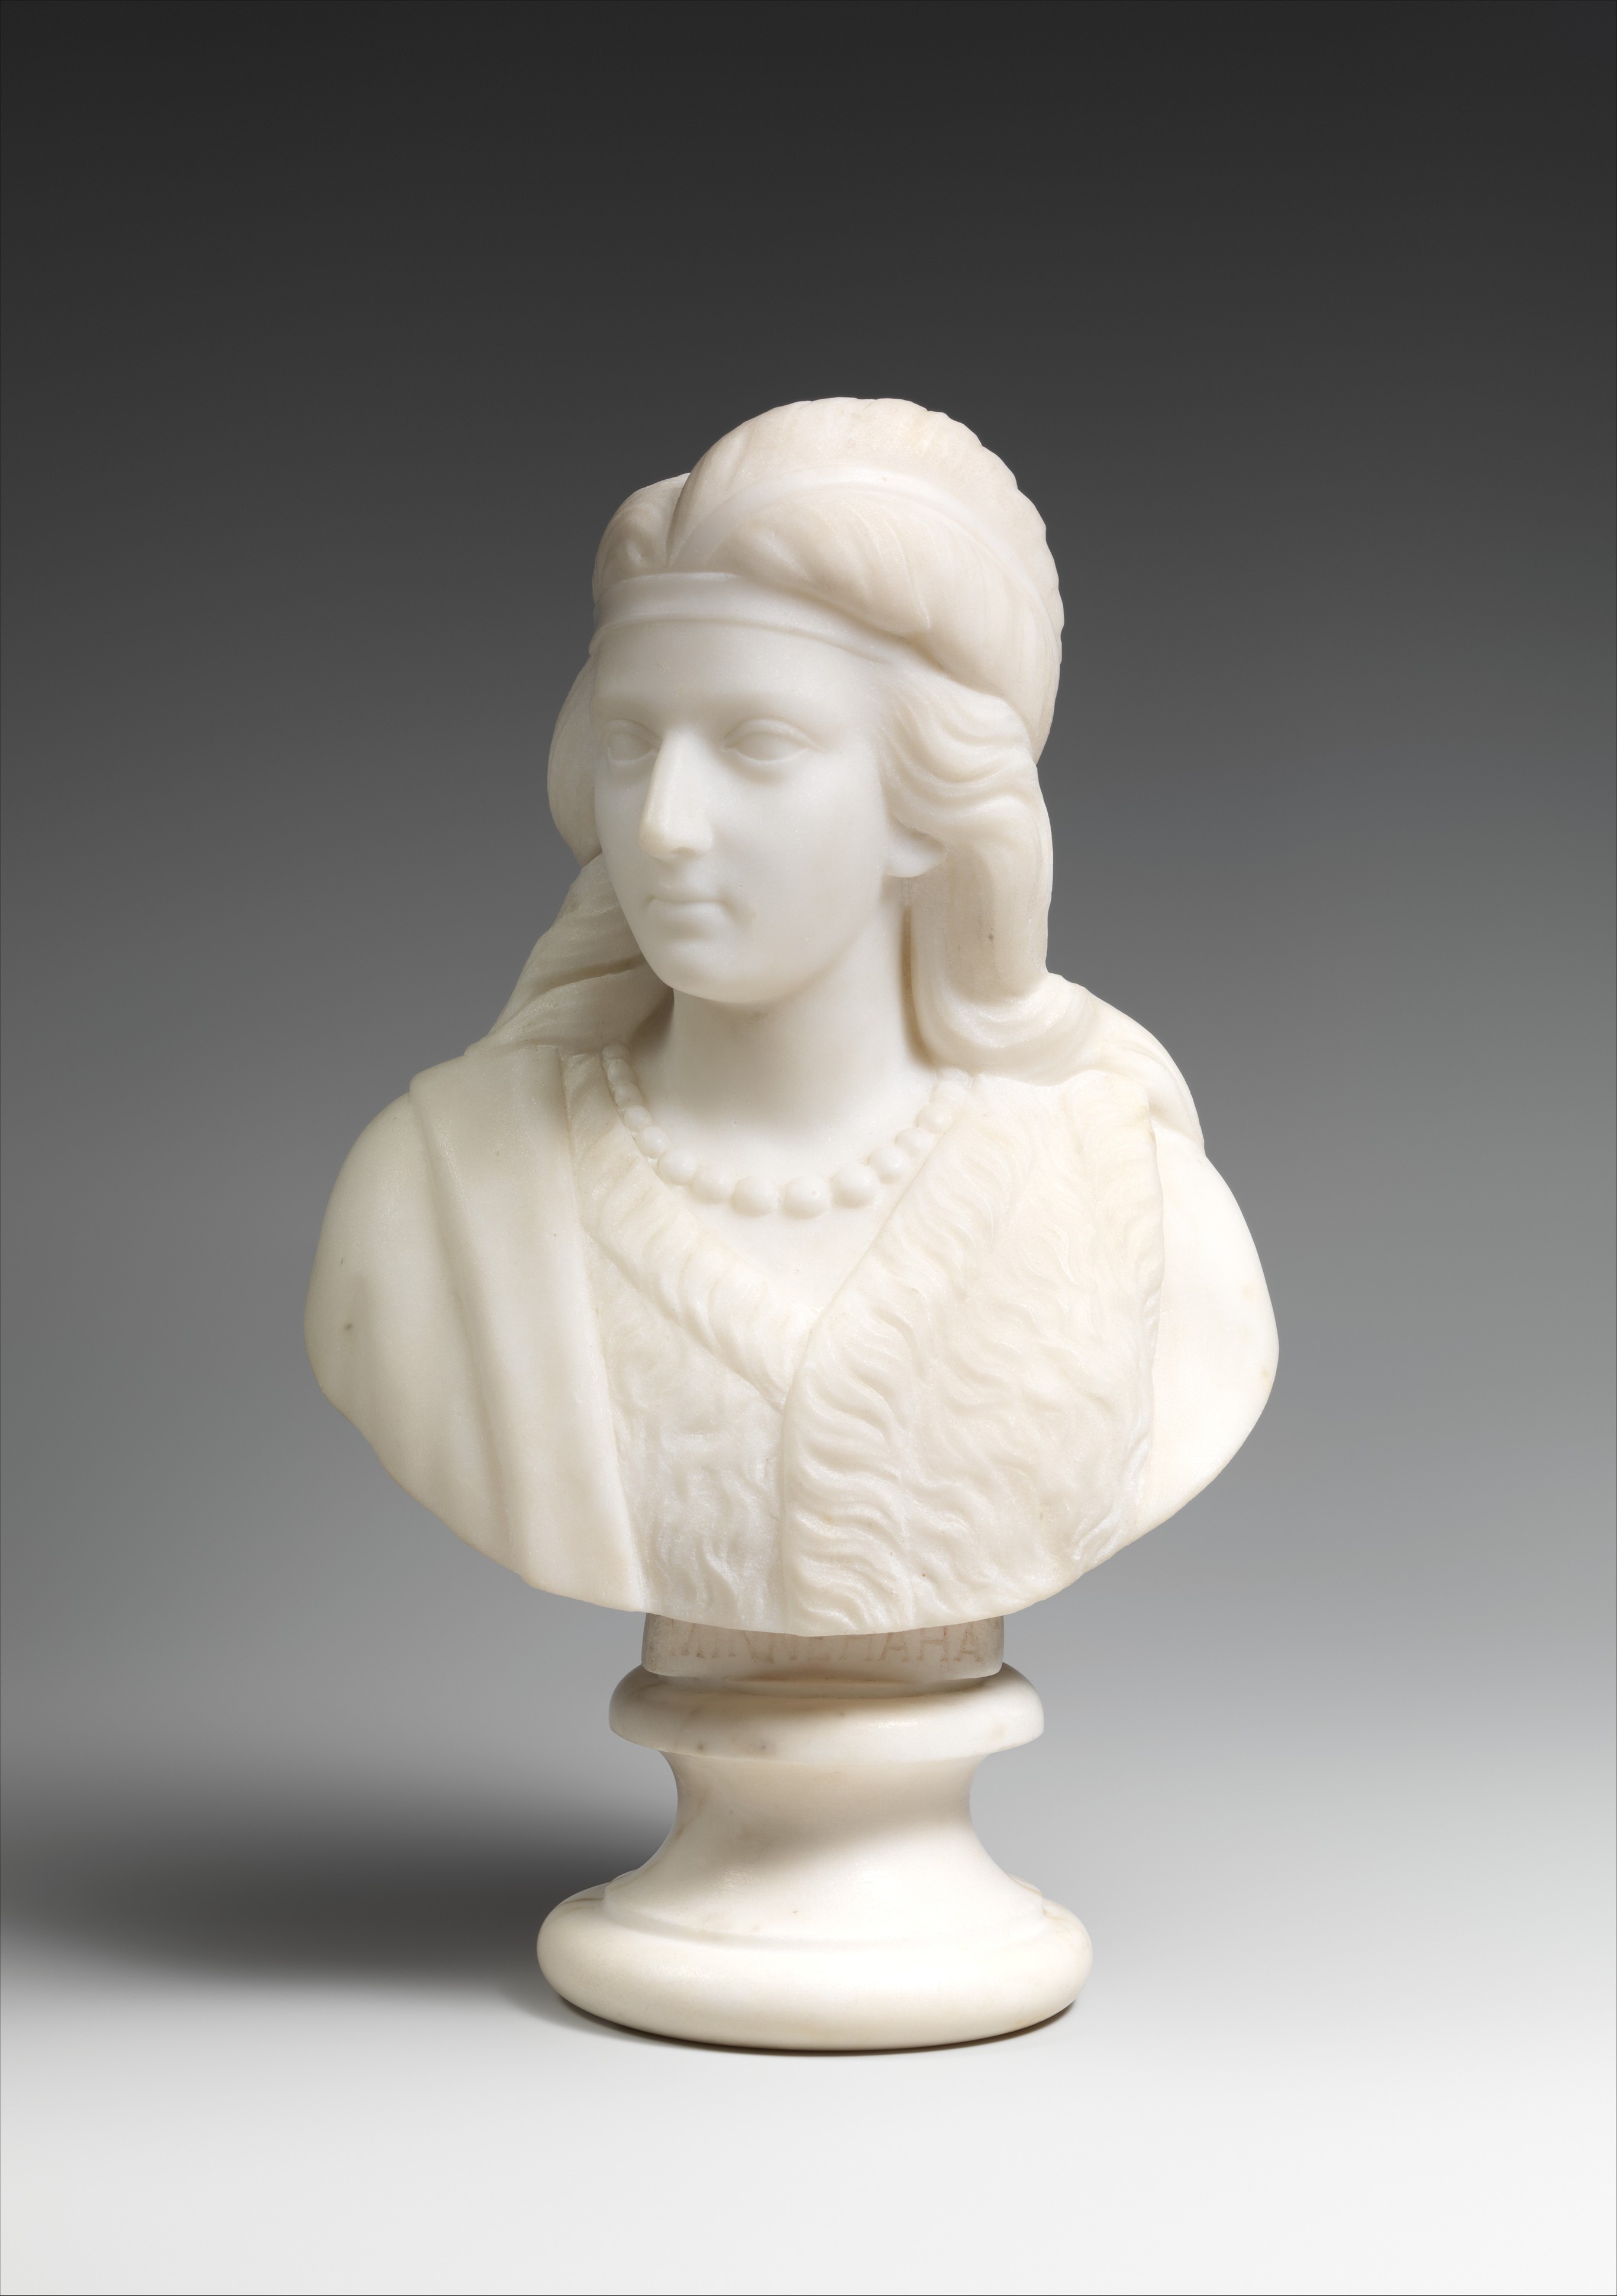 米尼哈 by Edmonia Lewis - 1868 - 29.5 × 18.4 × 12.4 cm 